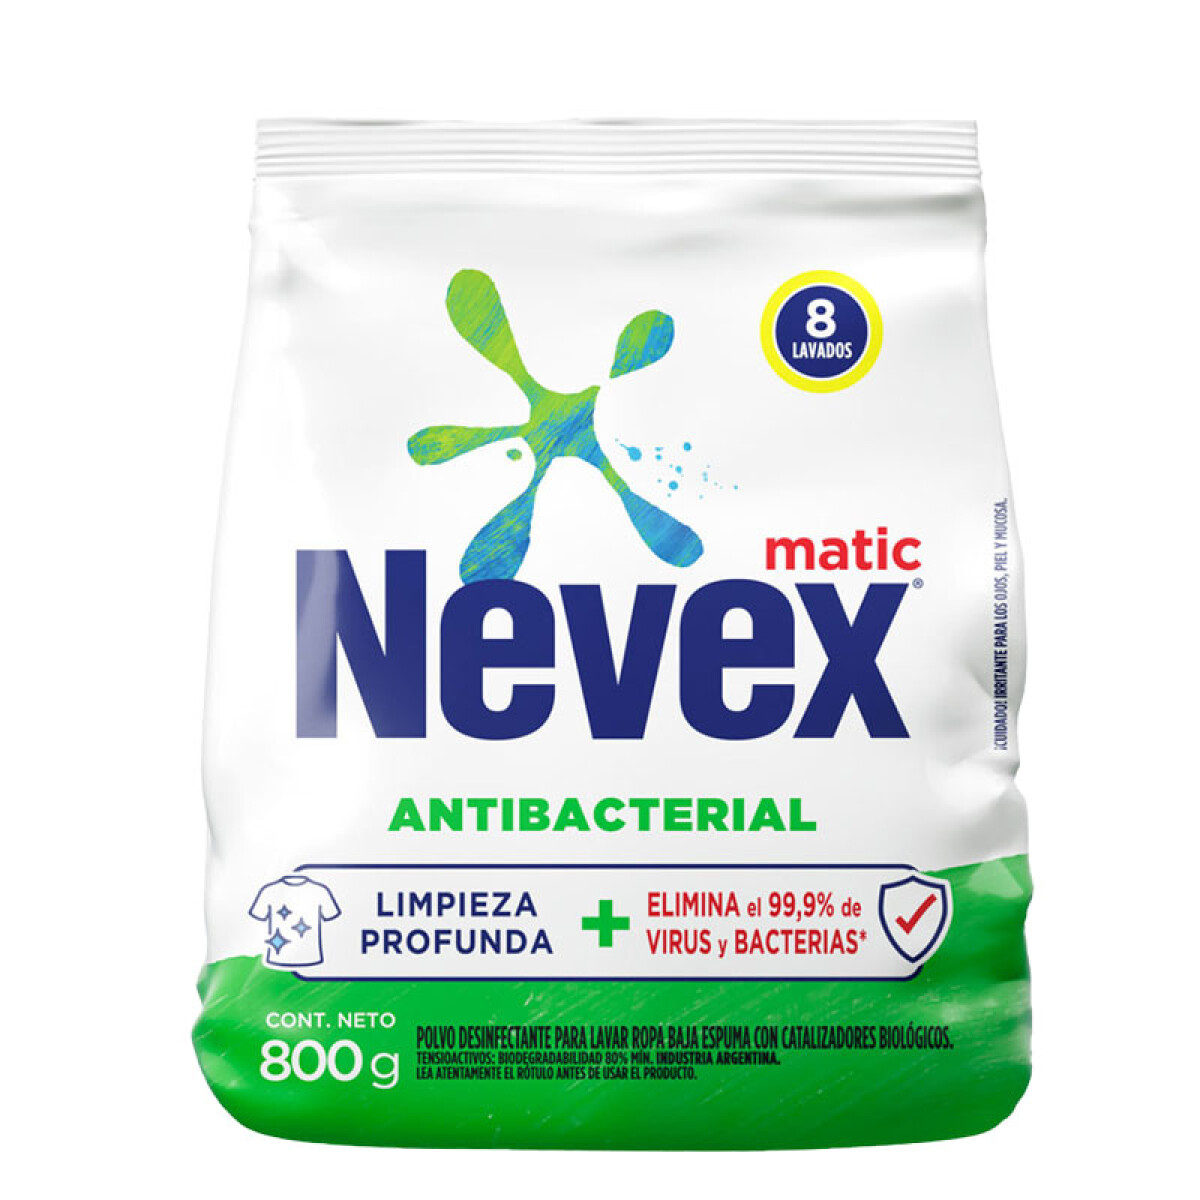 NEVEX 800grs Antibacterial Matic 